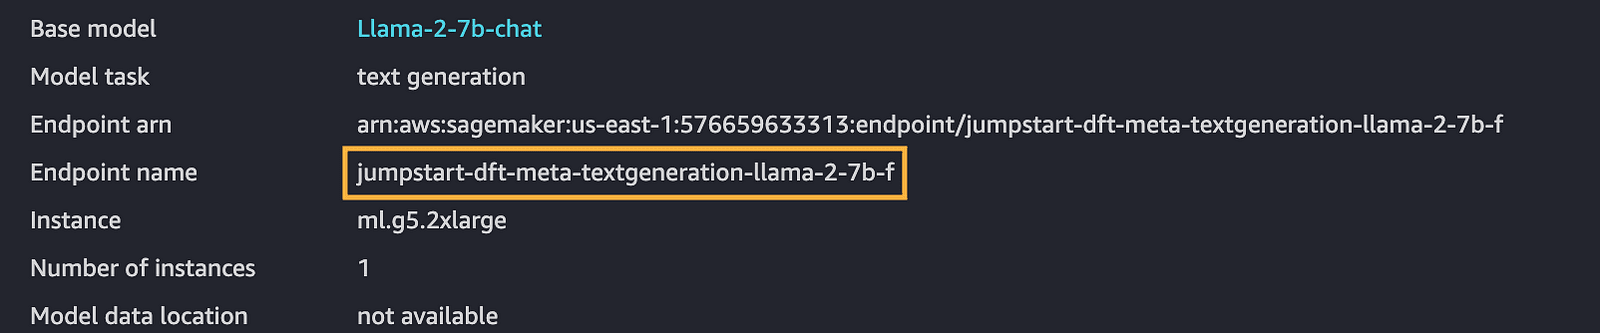 إنشاء خدمة مصغرة للواجهات الخلفية للدردشة المتعددة باستخدام Llama وChatGPT